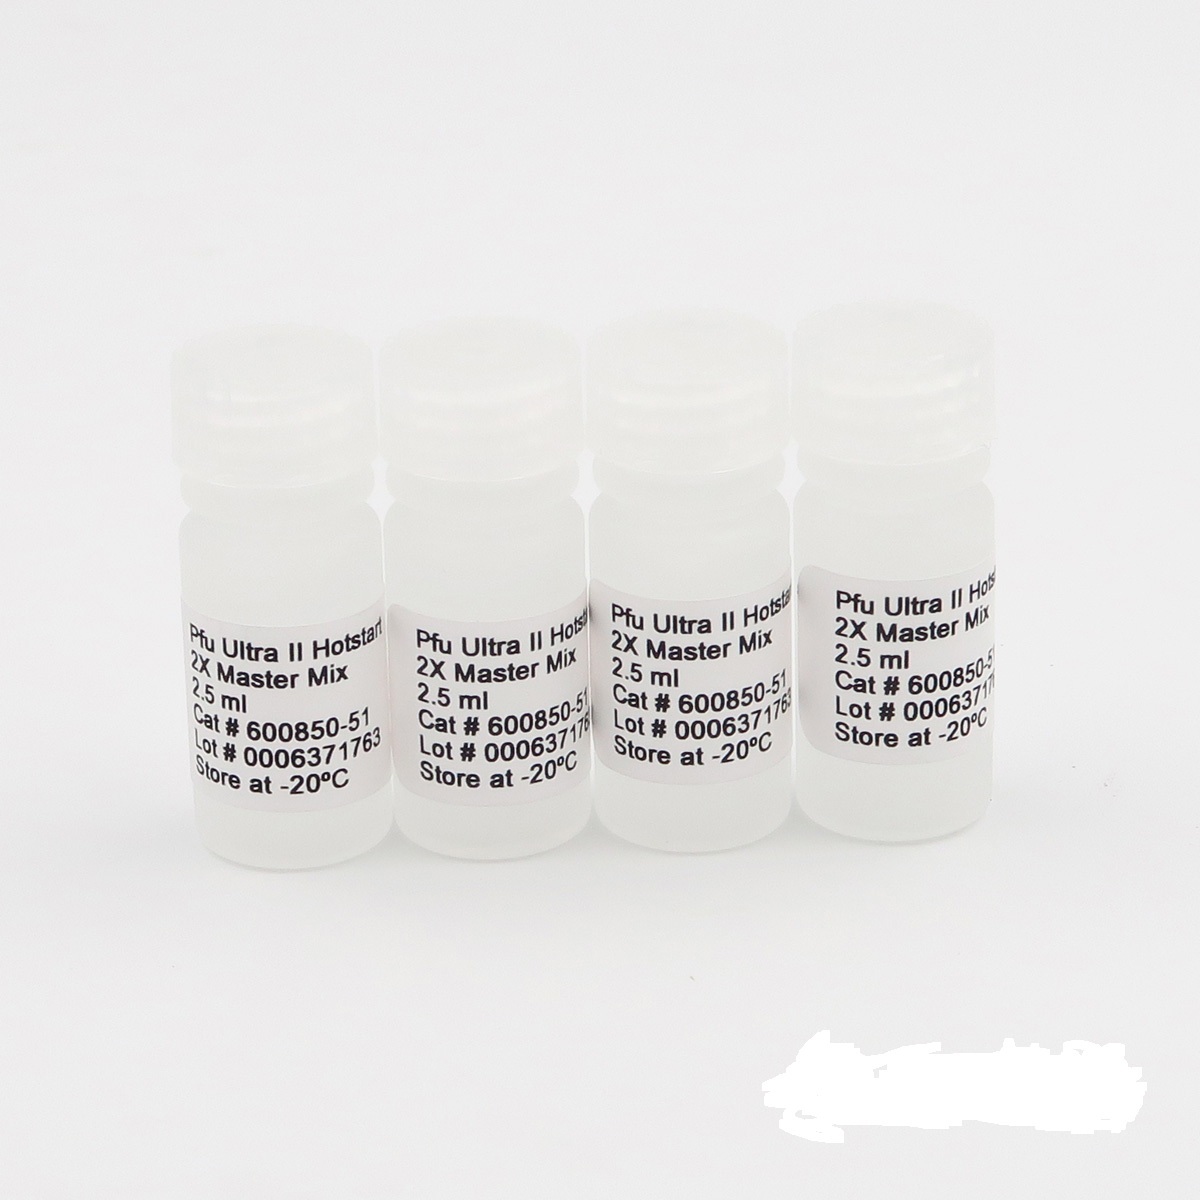 金氏金氏菌染料法荧光定量PCR试剂盒